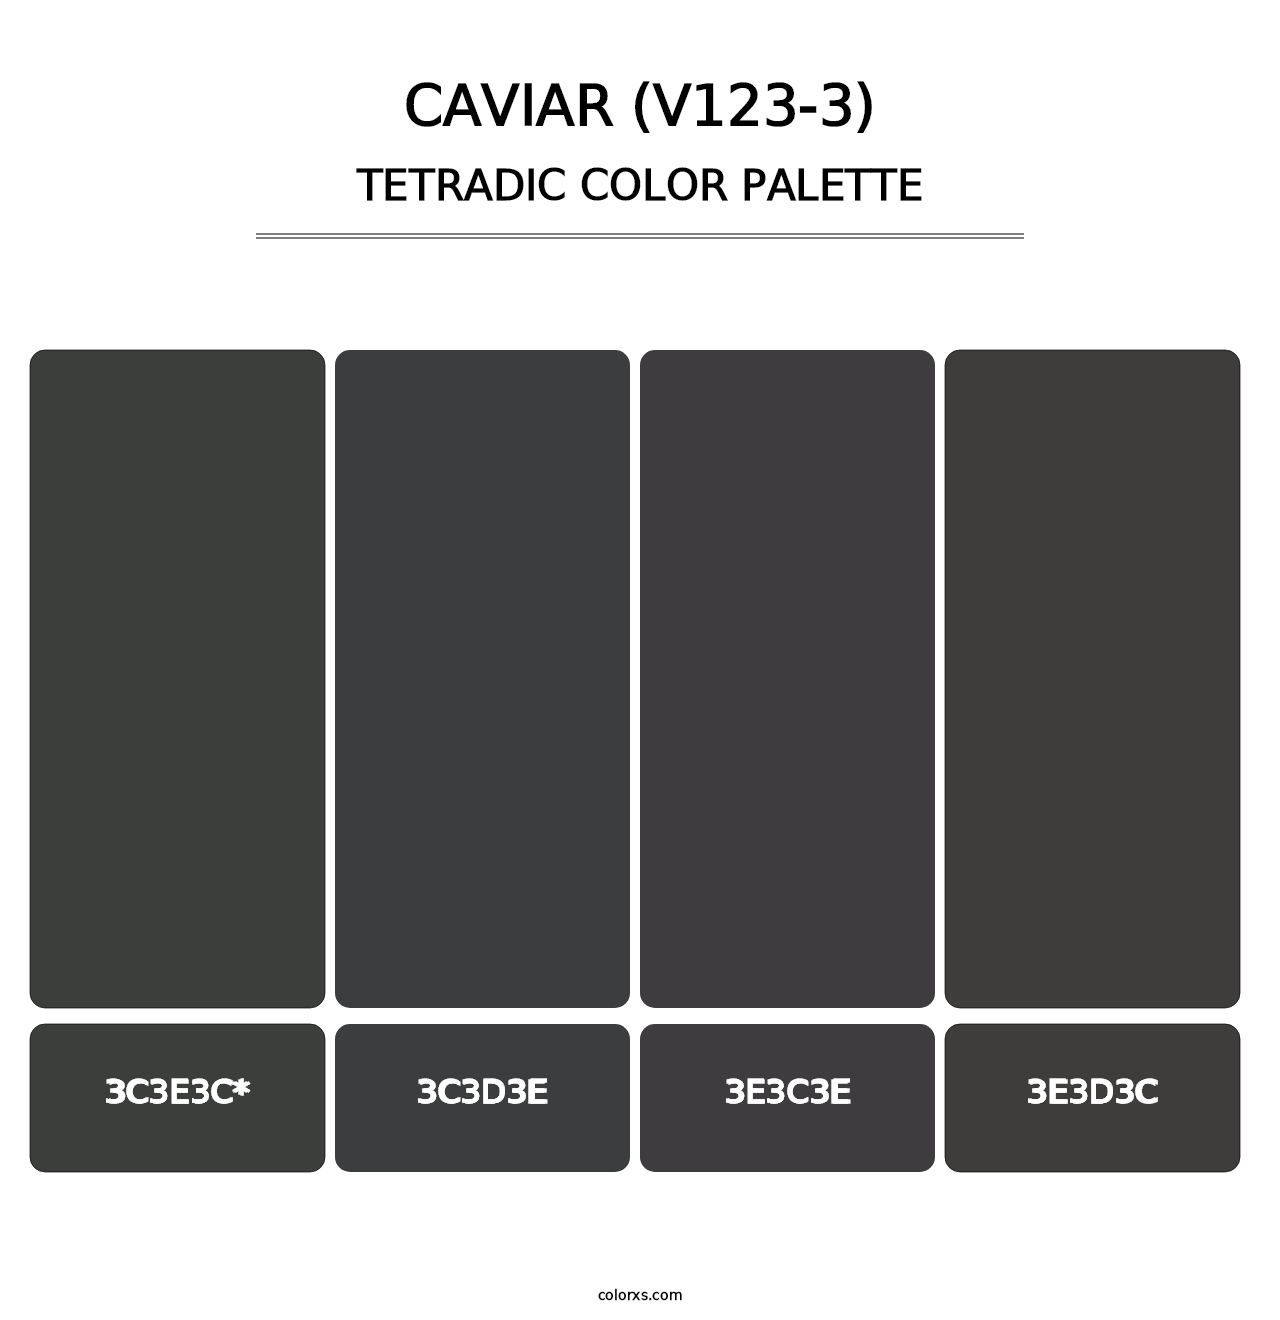 Caviar (V123-3) - Tetradic Color Palette